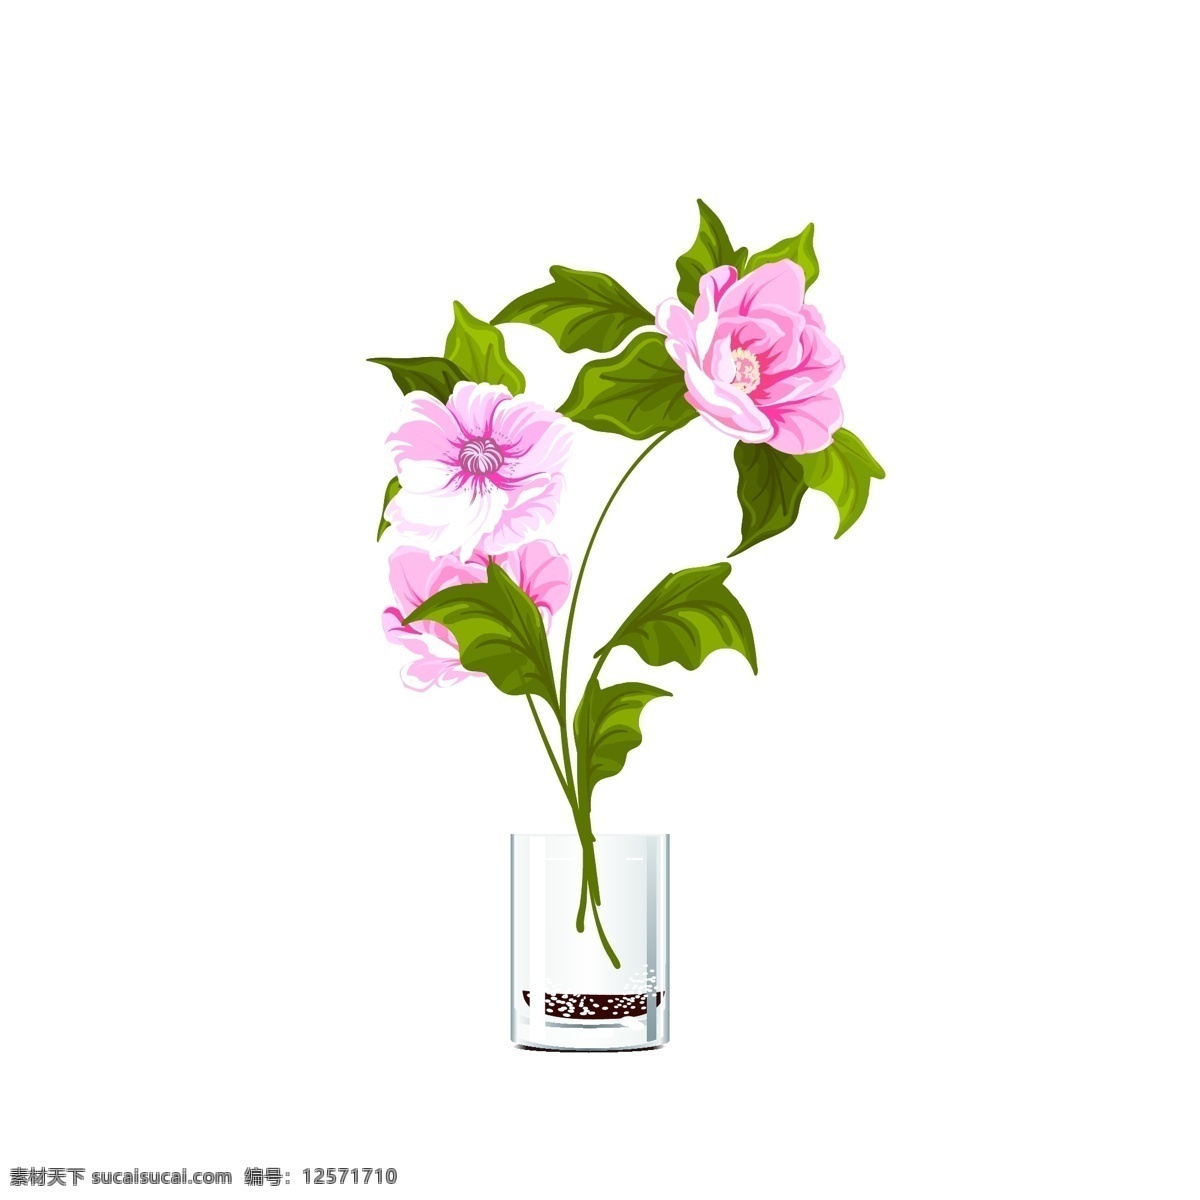 手绘 清新 植物 欣赏 盆景 花卉 绿叶 杯子 粉色花朵